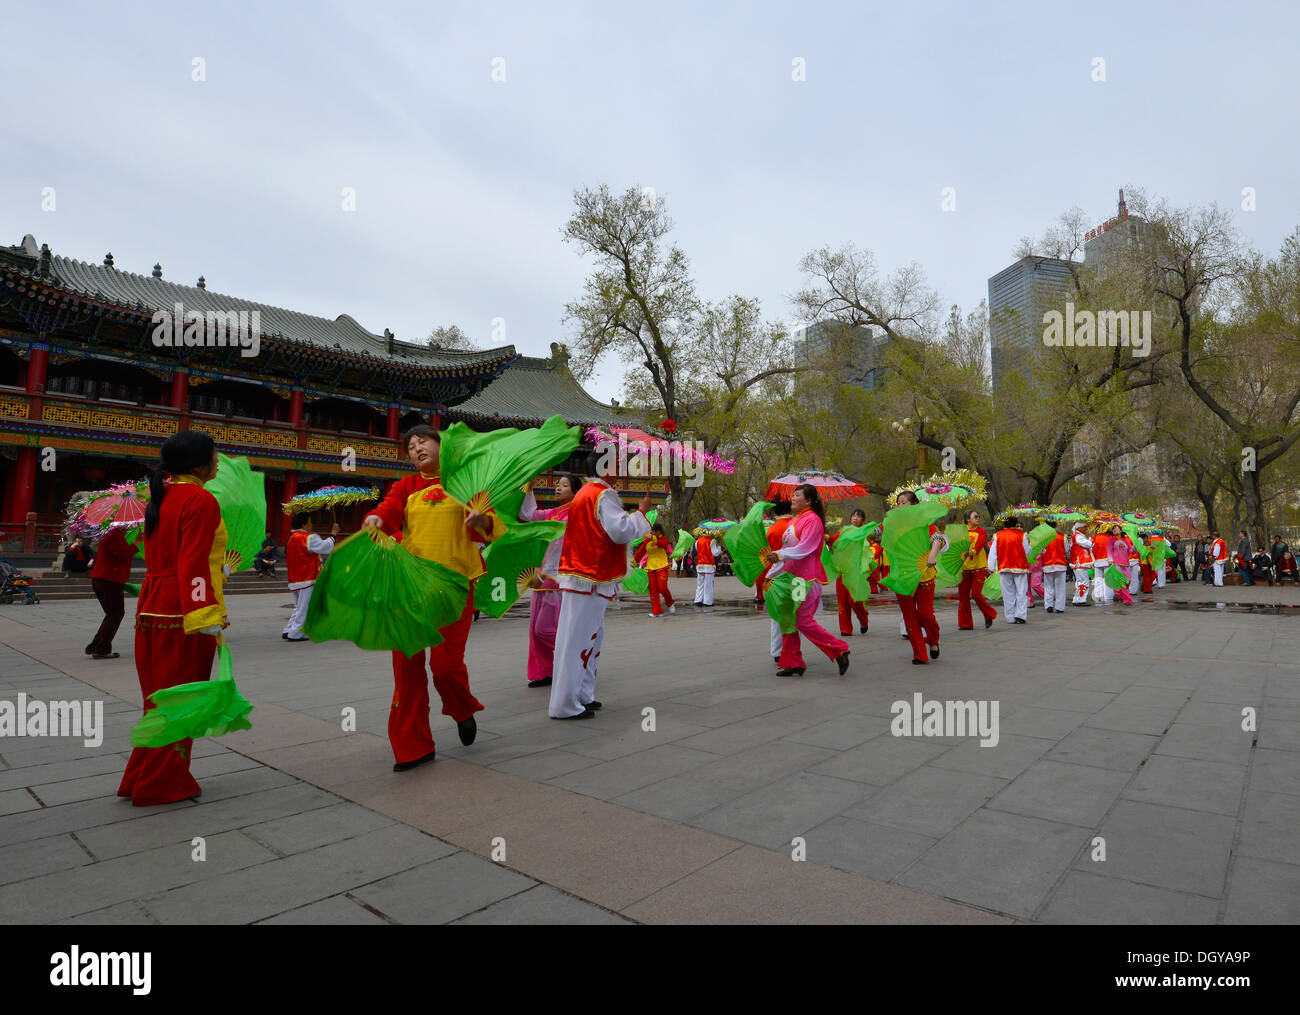 Danseurs amateurs chinois dans un parc public en face d'immeubles de grande hauteur et un pavillon chinois, Urumqi Banque D'Images